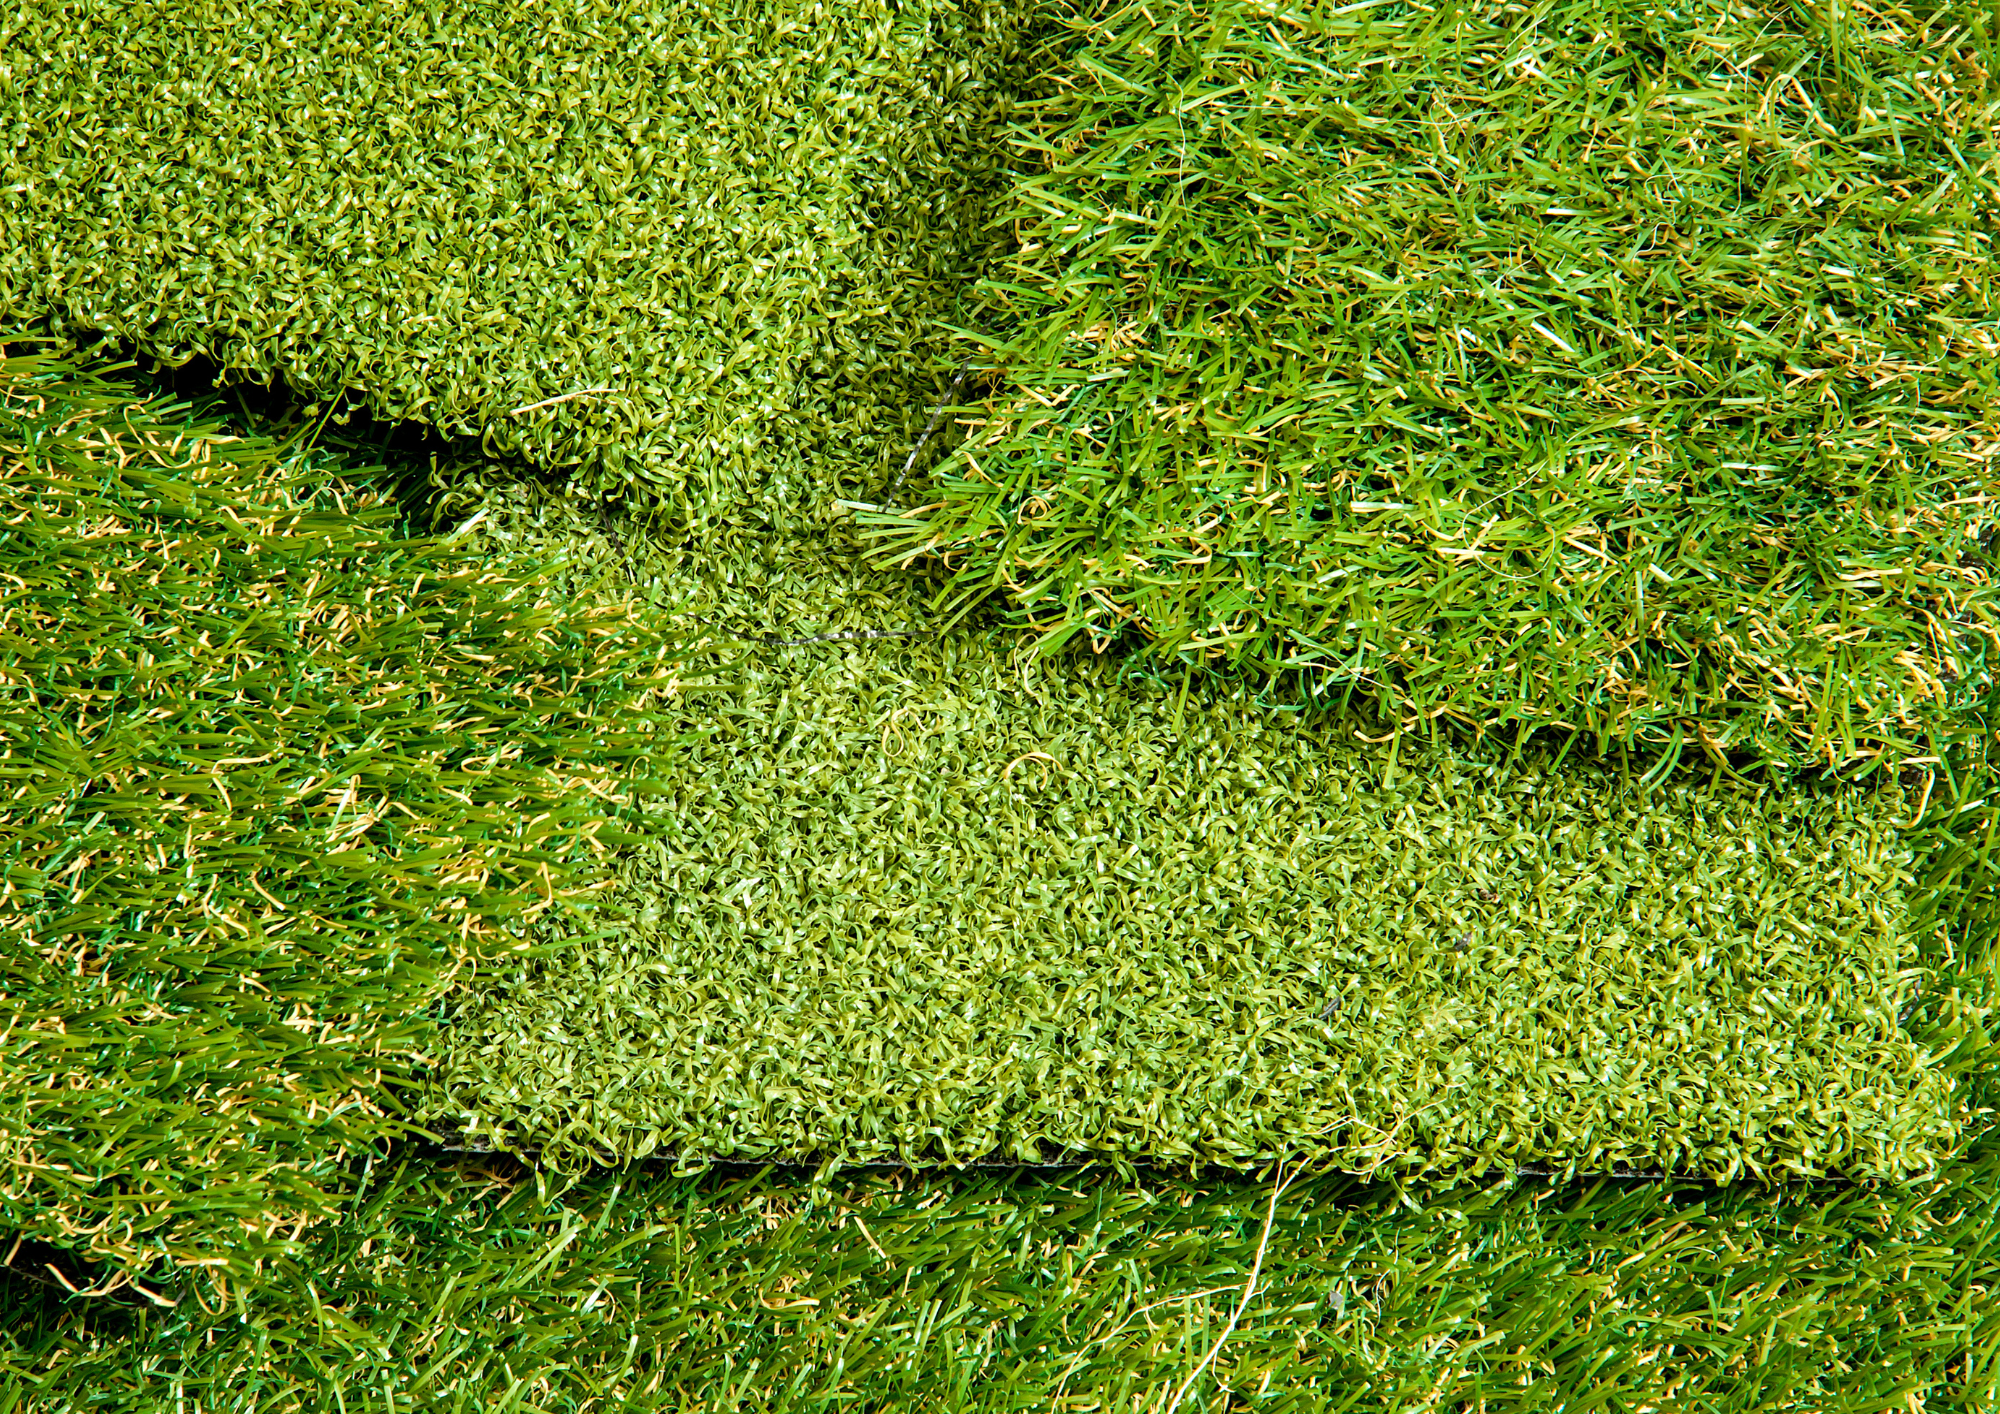 Césped artificial de color verde que se encuentra en un jardín